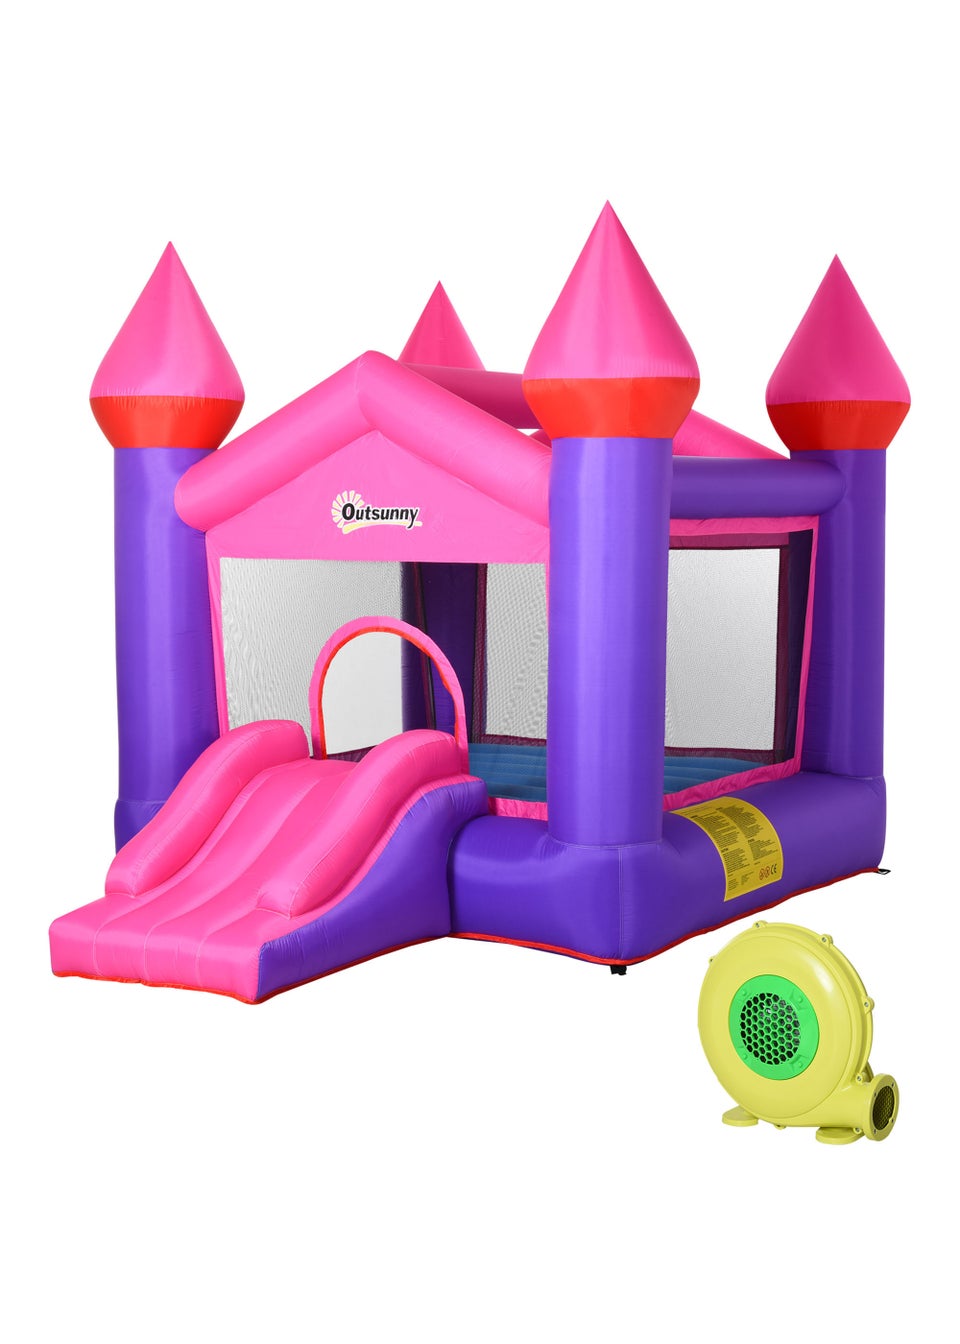 Outsunny Inflatable House Bouncy Castle (255cm x 330cm x 220cm)